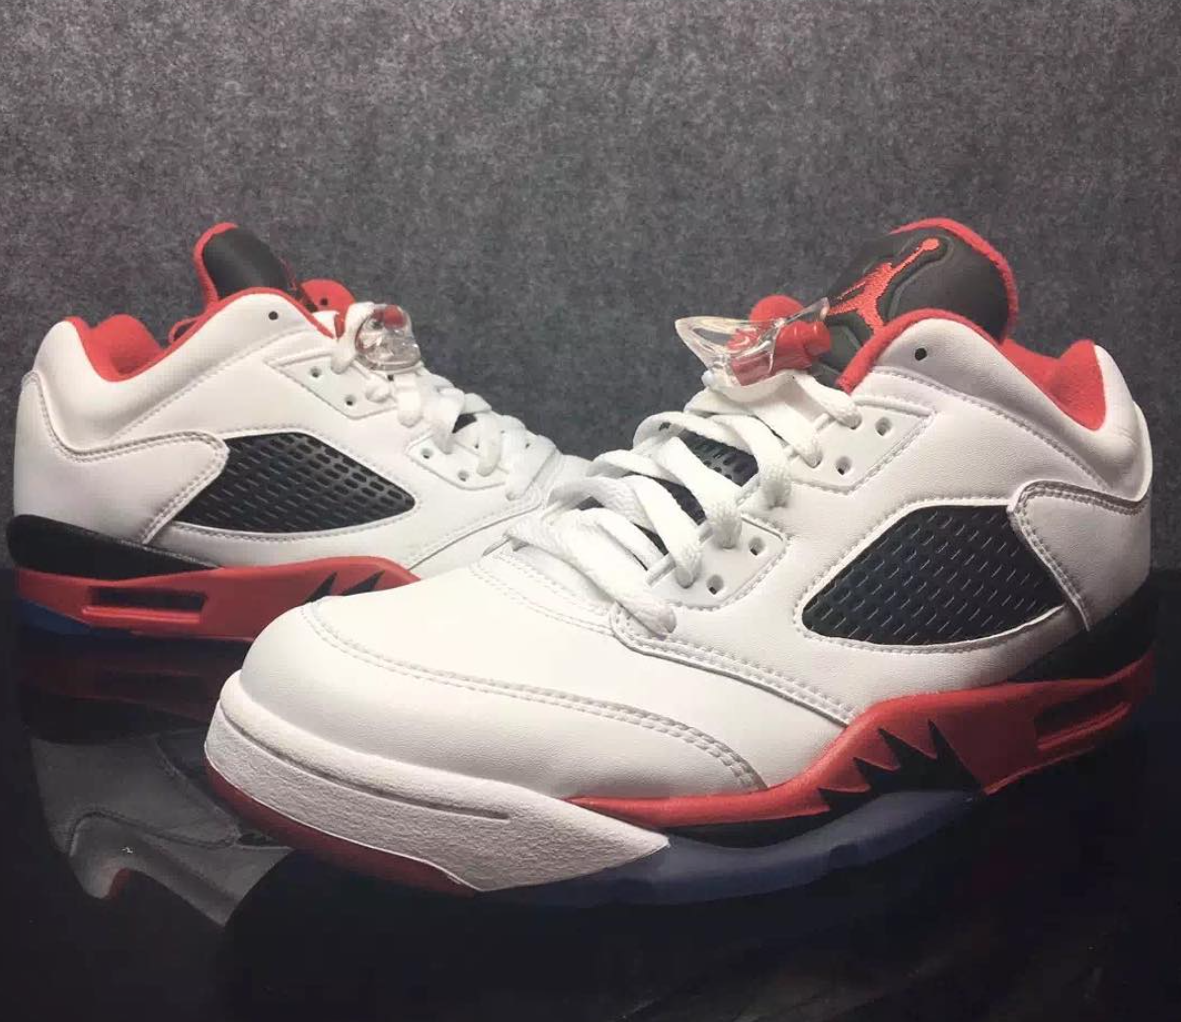 Air Jordan 5 Low Fire Red 2016 - Sneaker Bar Detroit